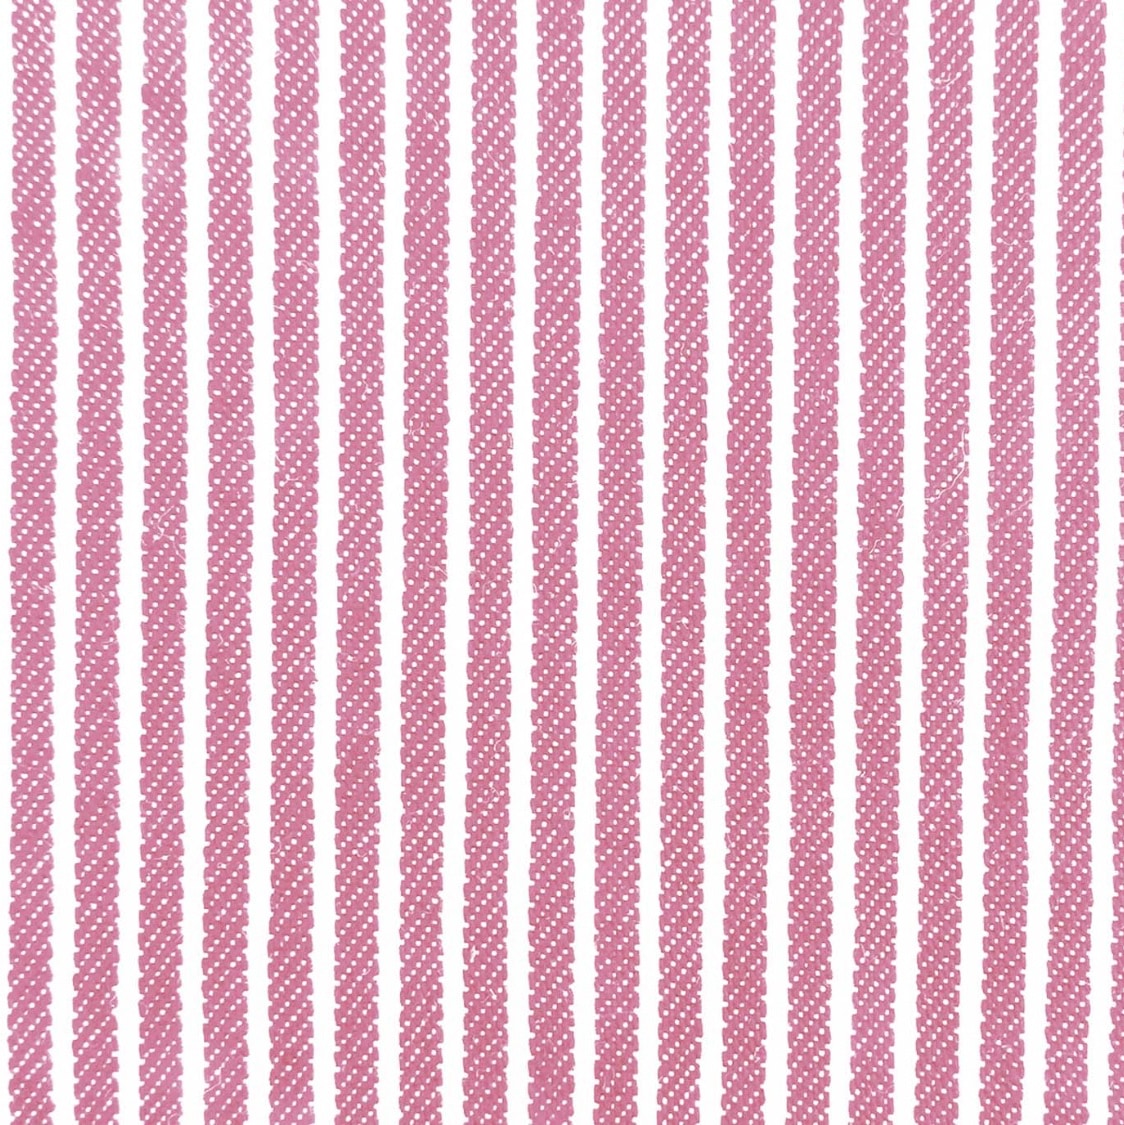 Jeansstoff rosa-weiß gestreift 